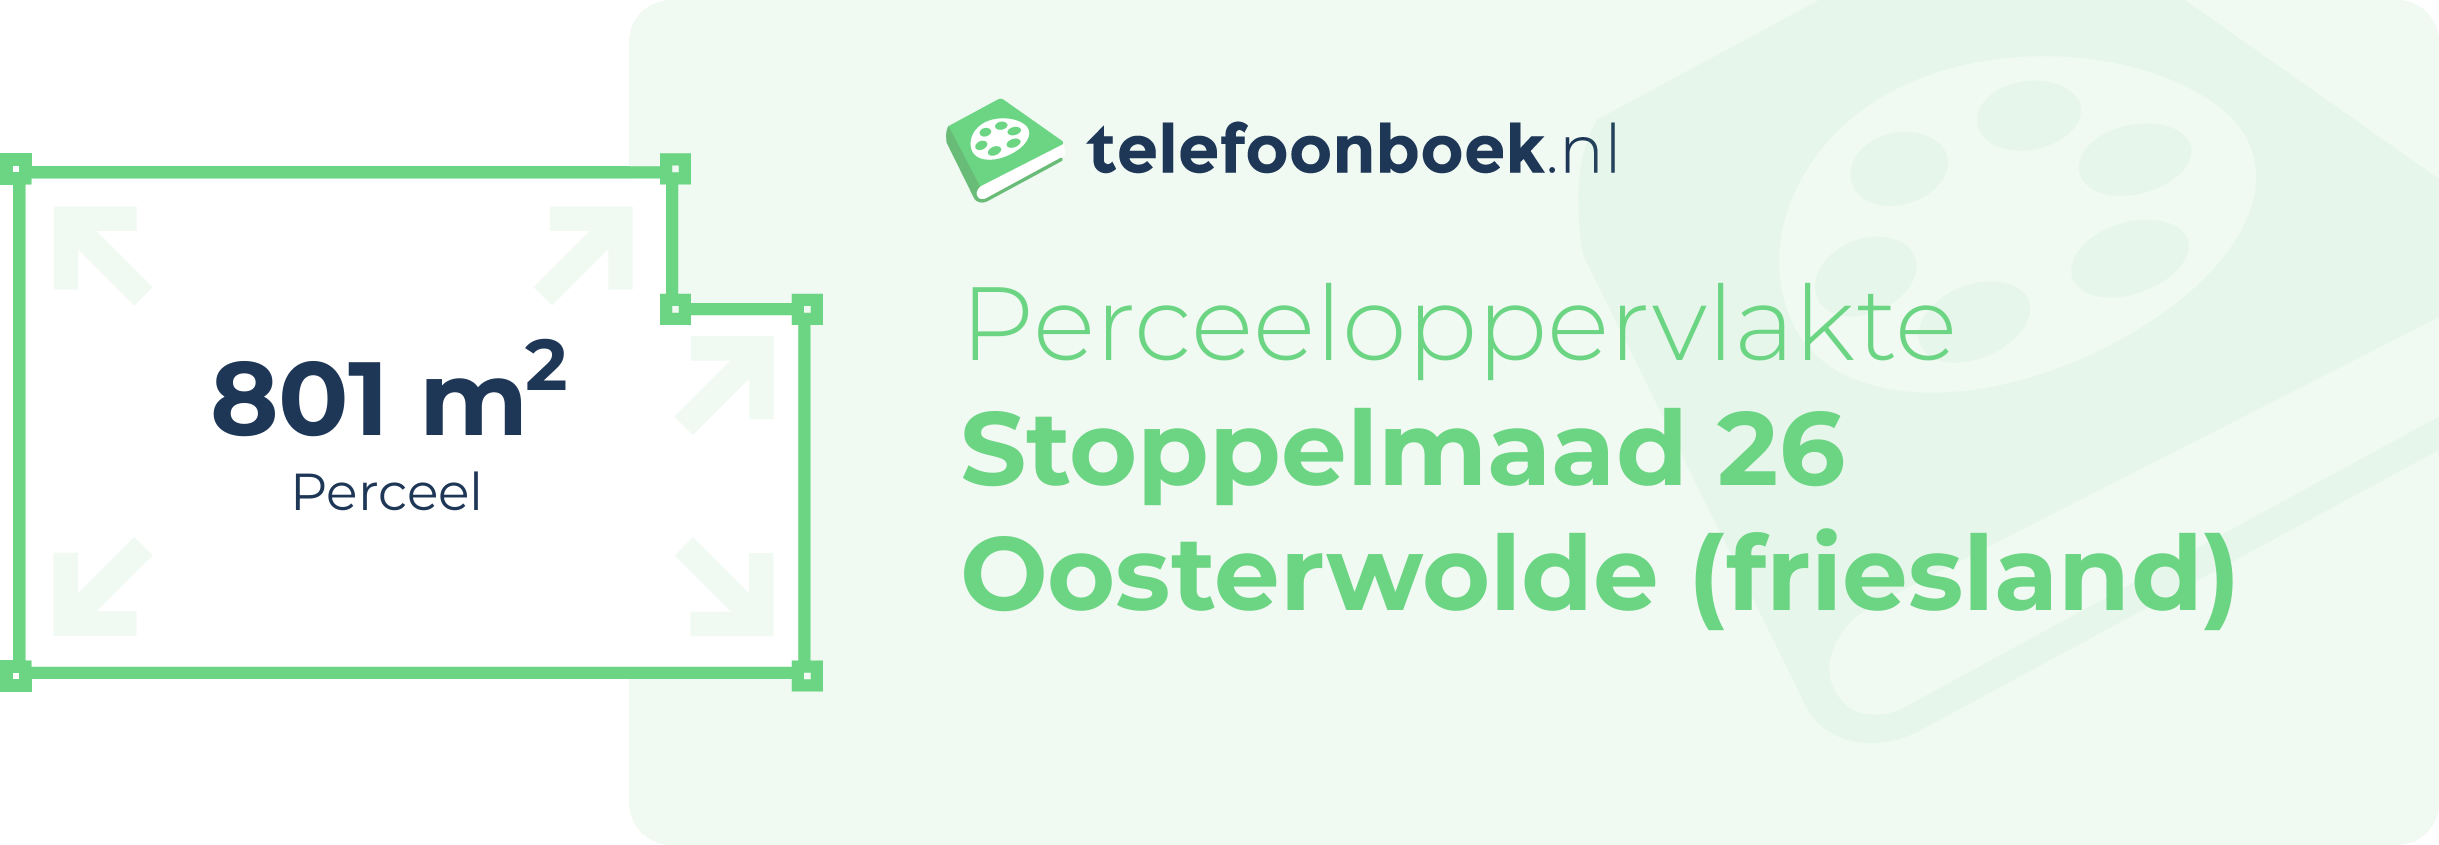 Perceeloppervlakte Stoppelmaad 26 Oosterwolde (Friesland)